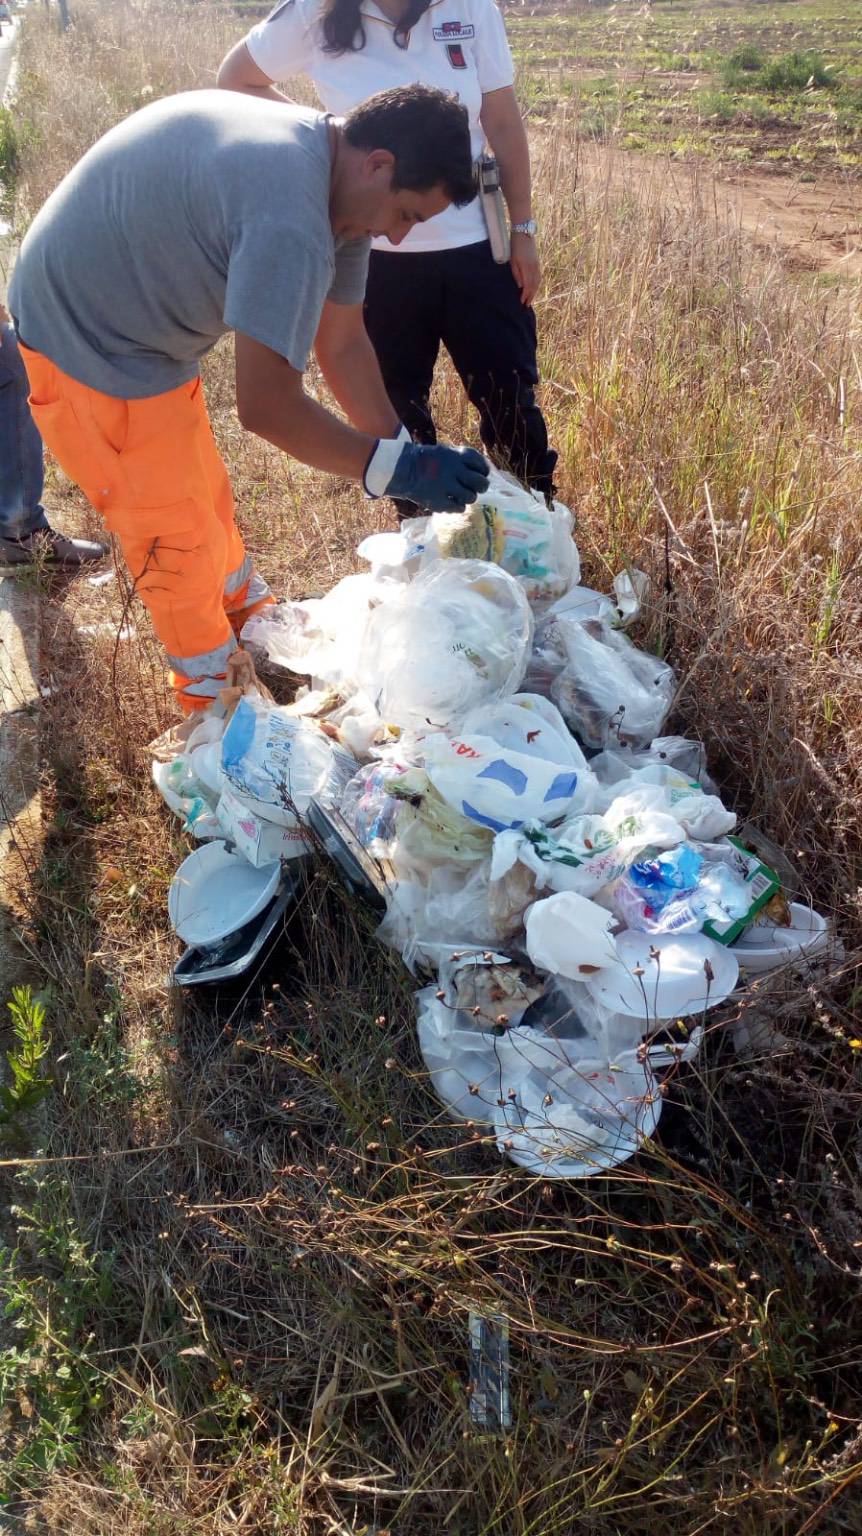 Lotta all’abbandono dei rifiuti, fioccano le multe sul litorale di Torvaianica